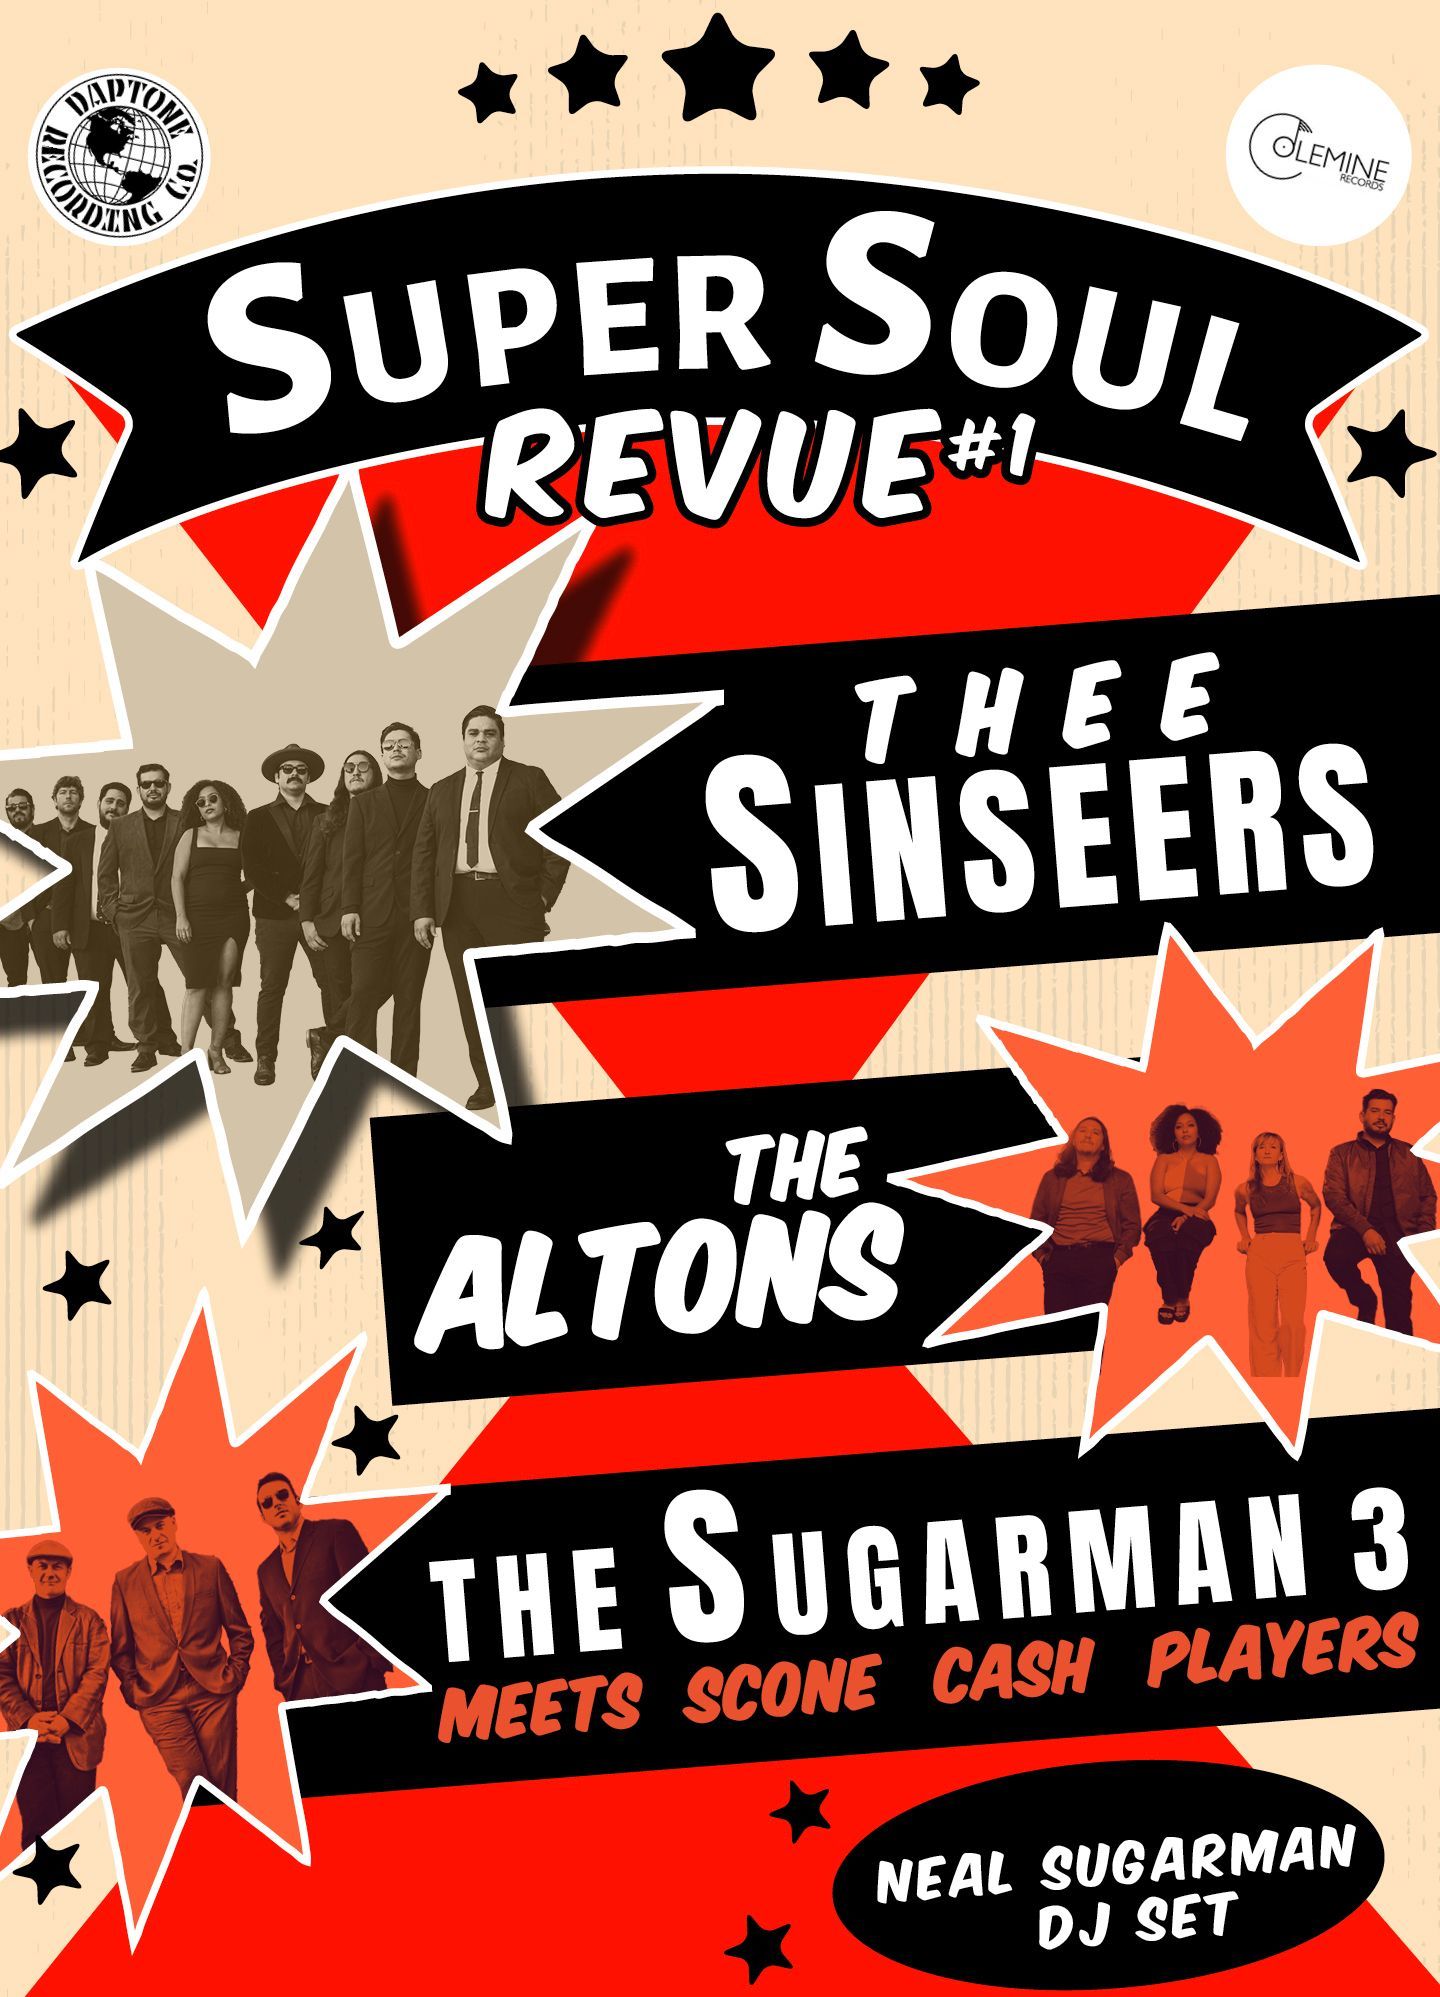 Affiche pour la soirée Super Soul Revue au Quai M